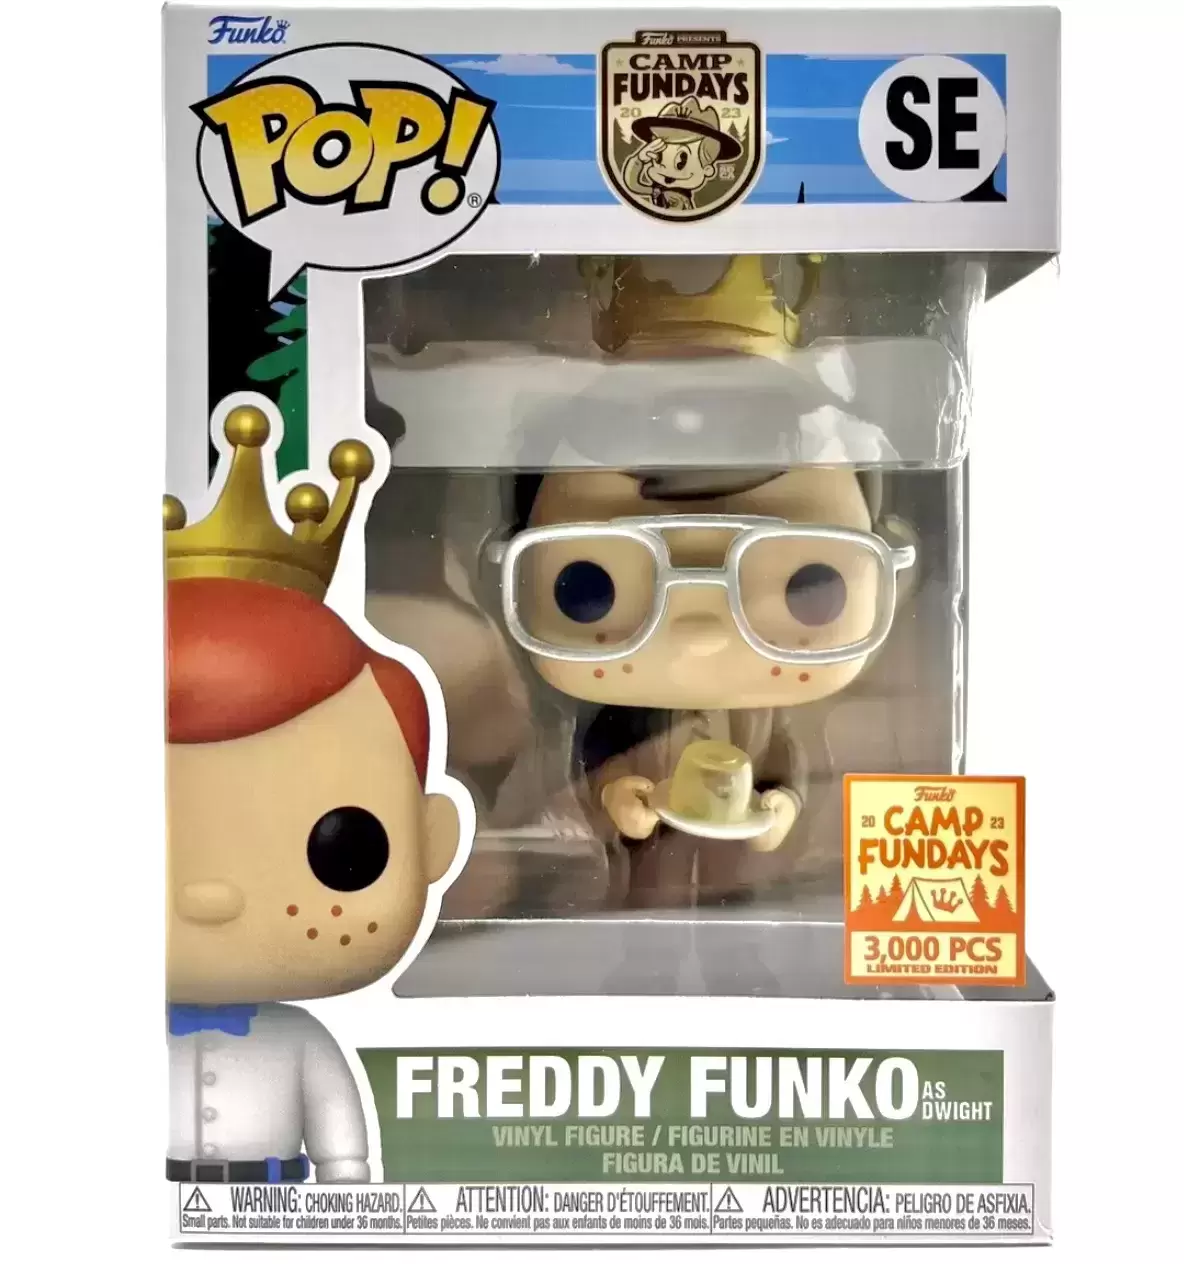 POP! Funko - Freddy Funko as Dwight